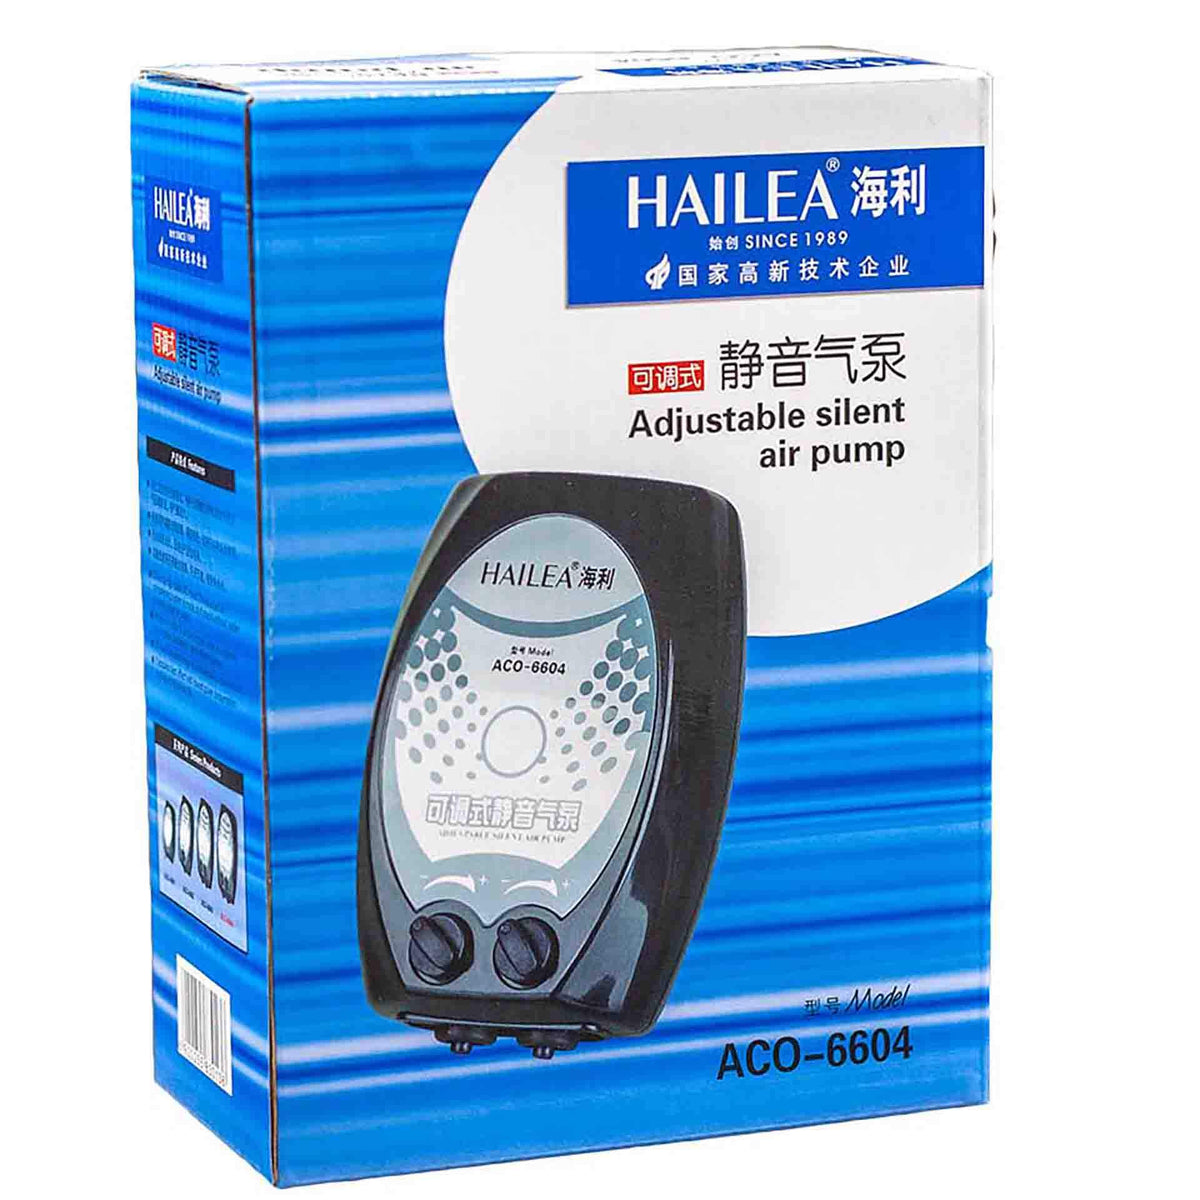 Hailea 66 Series Adjustable Silent Air Pump - Dual Outlet 2 x 4.5L/min